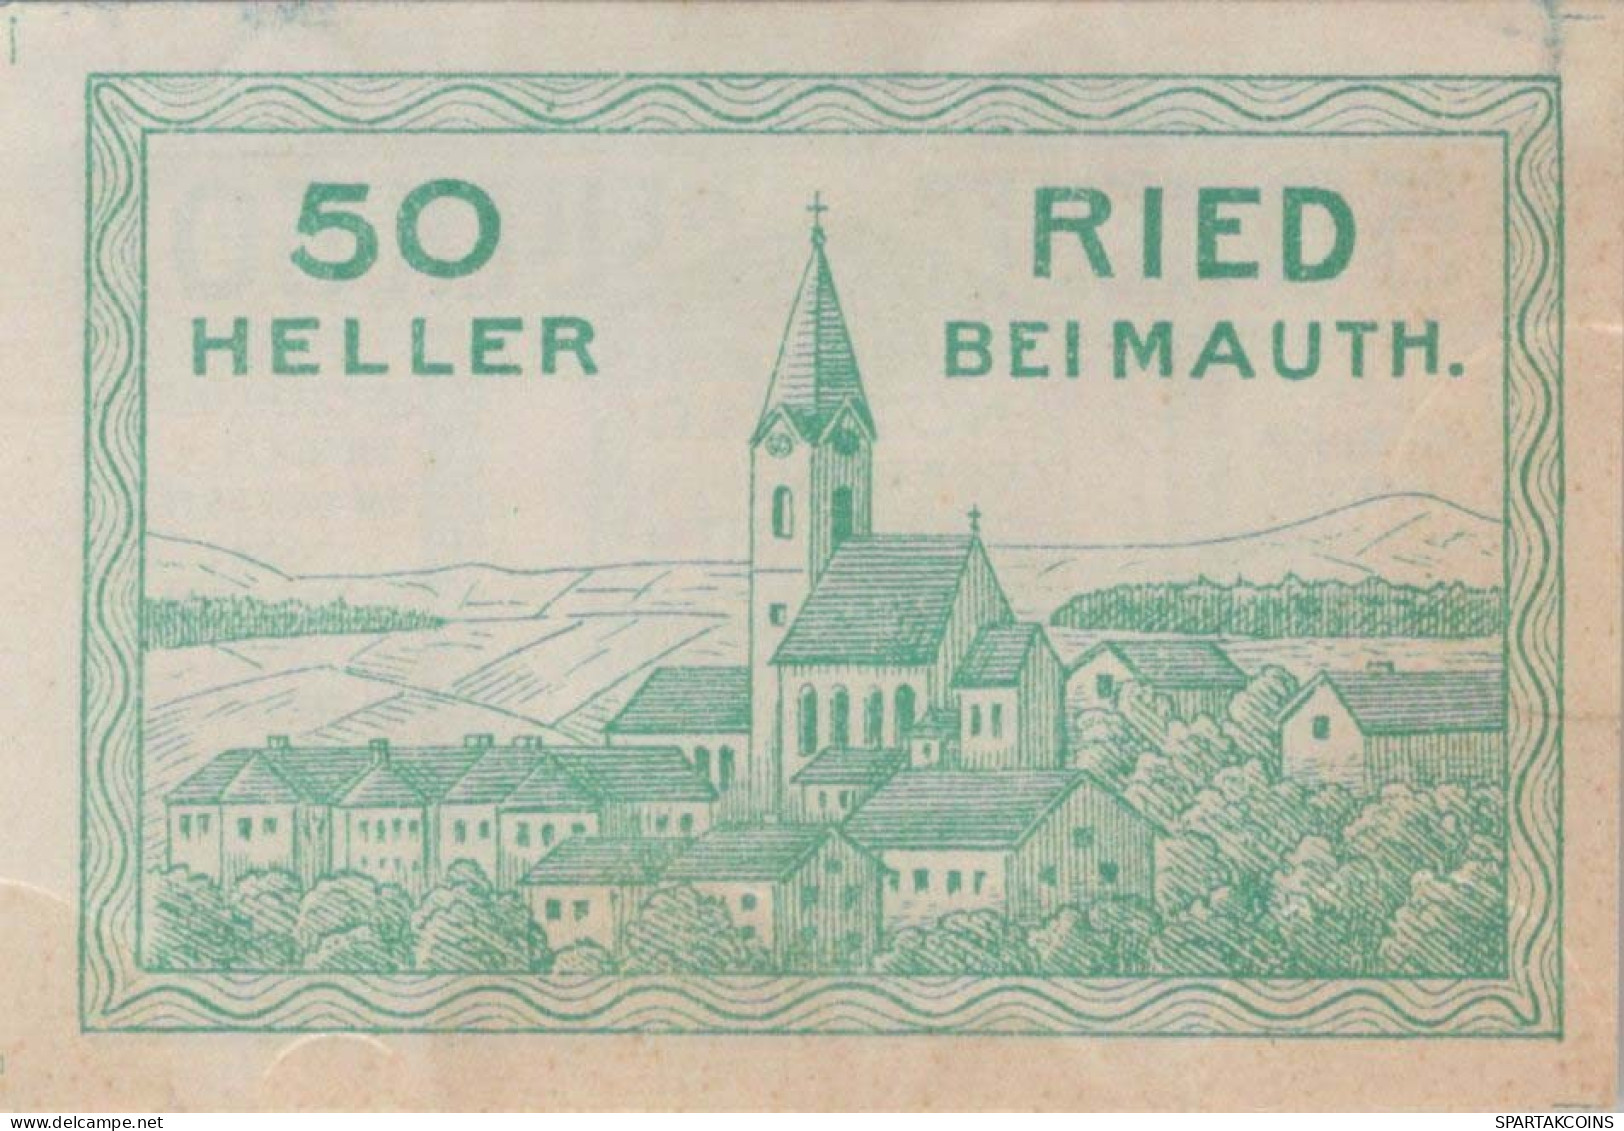 50 HELLER 1920 Stadt Ried Bei Mauthausen Österreich Notgeld Banknote #PD978 - [11] Emissioni Locali